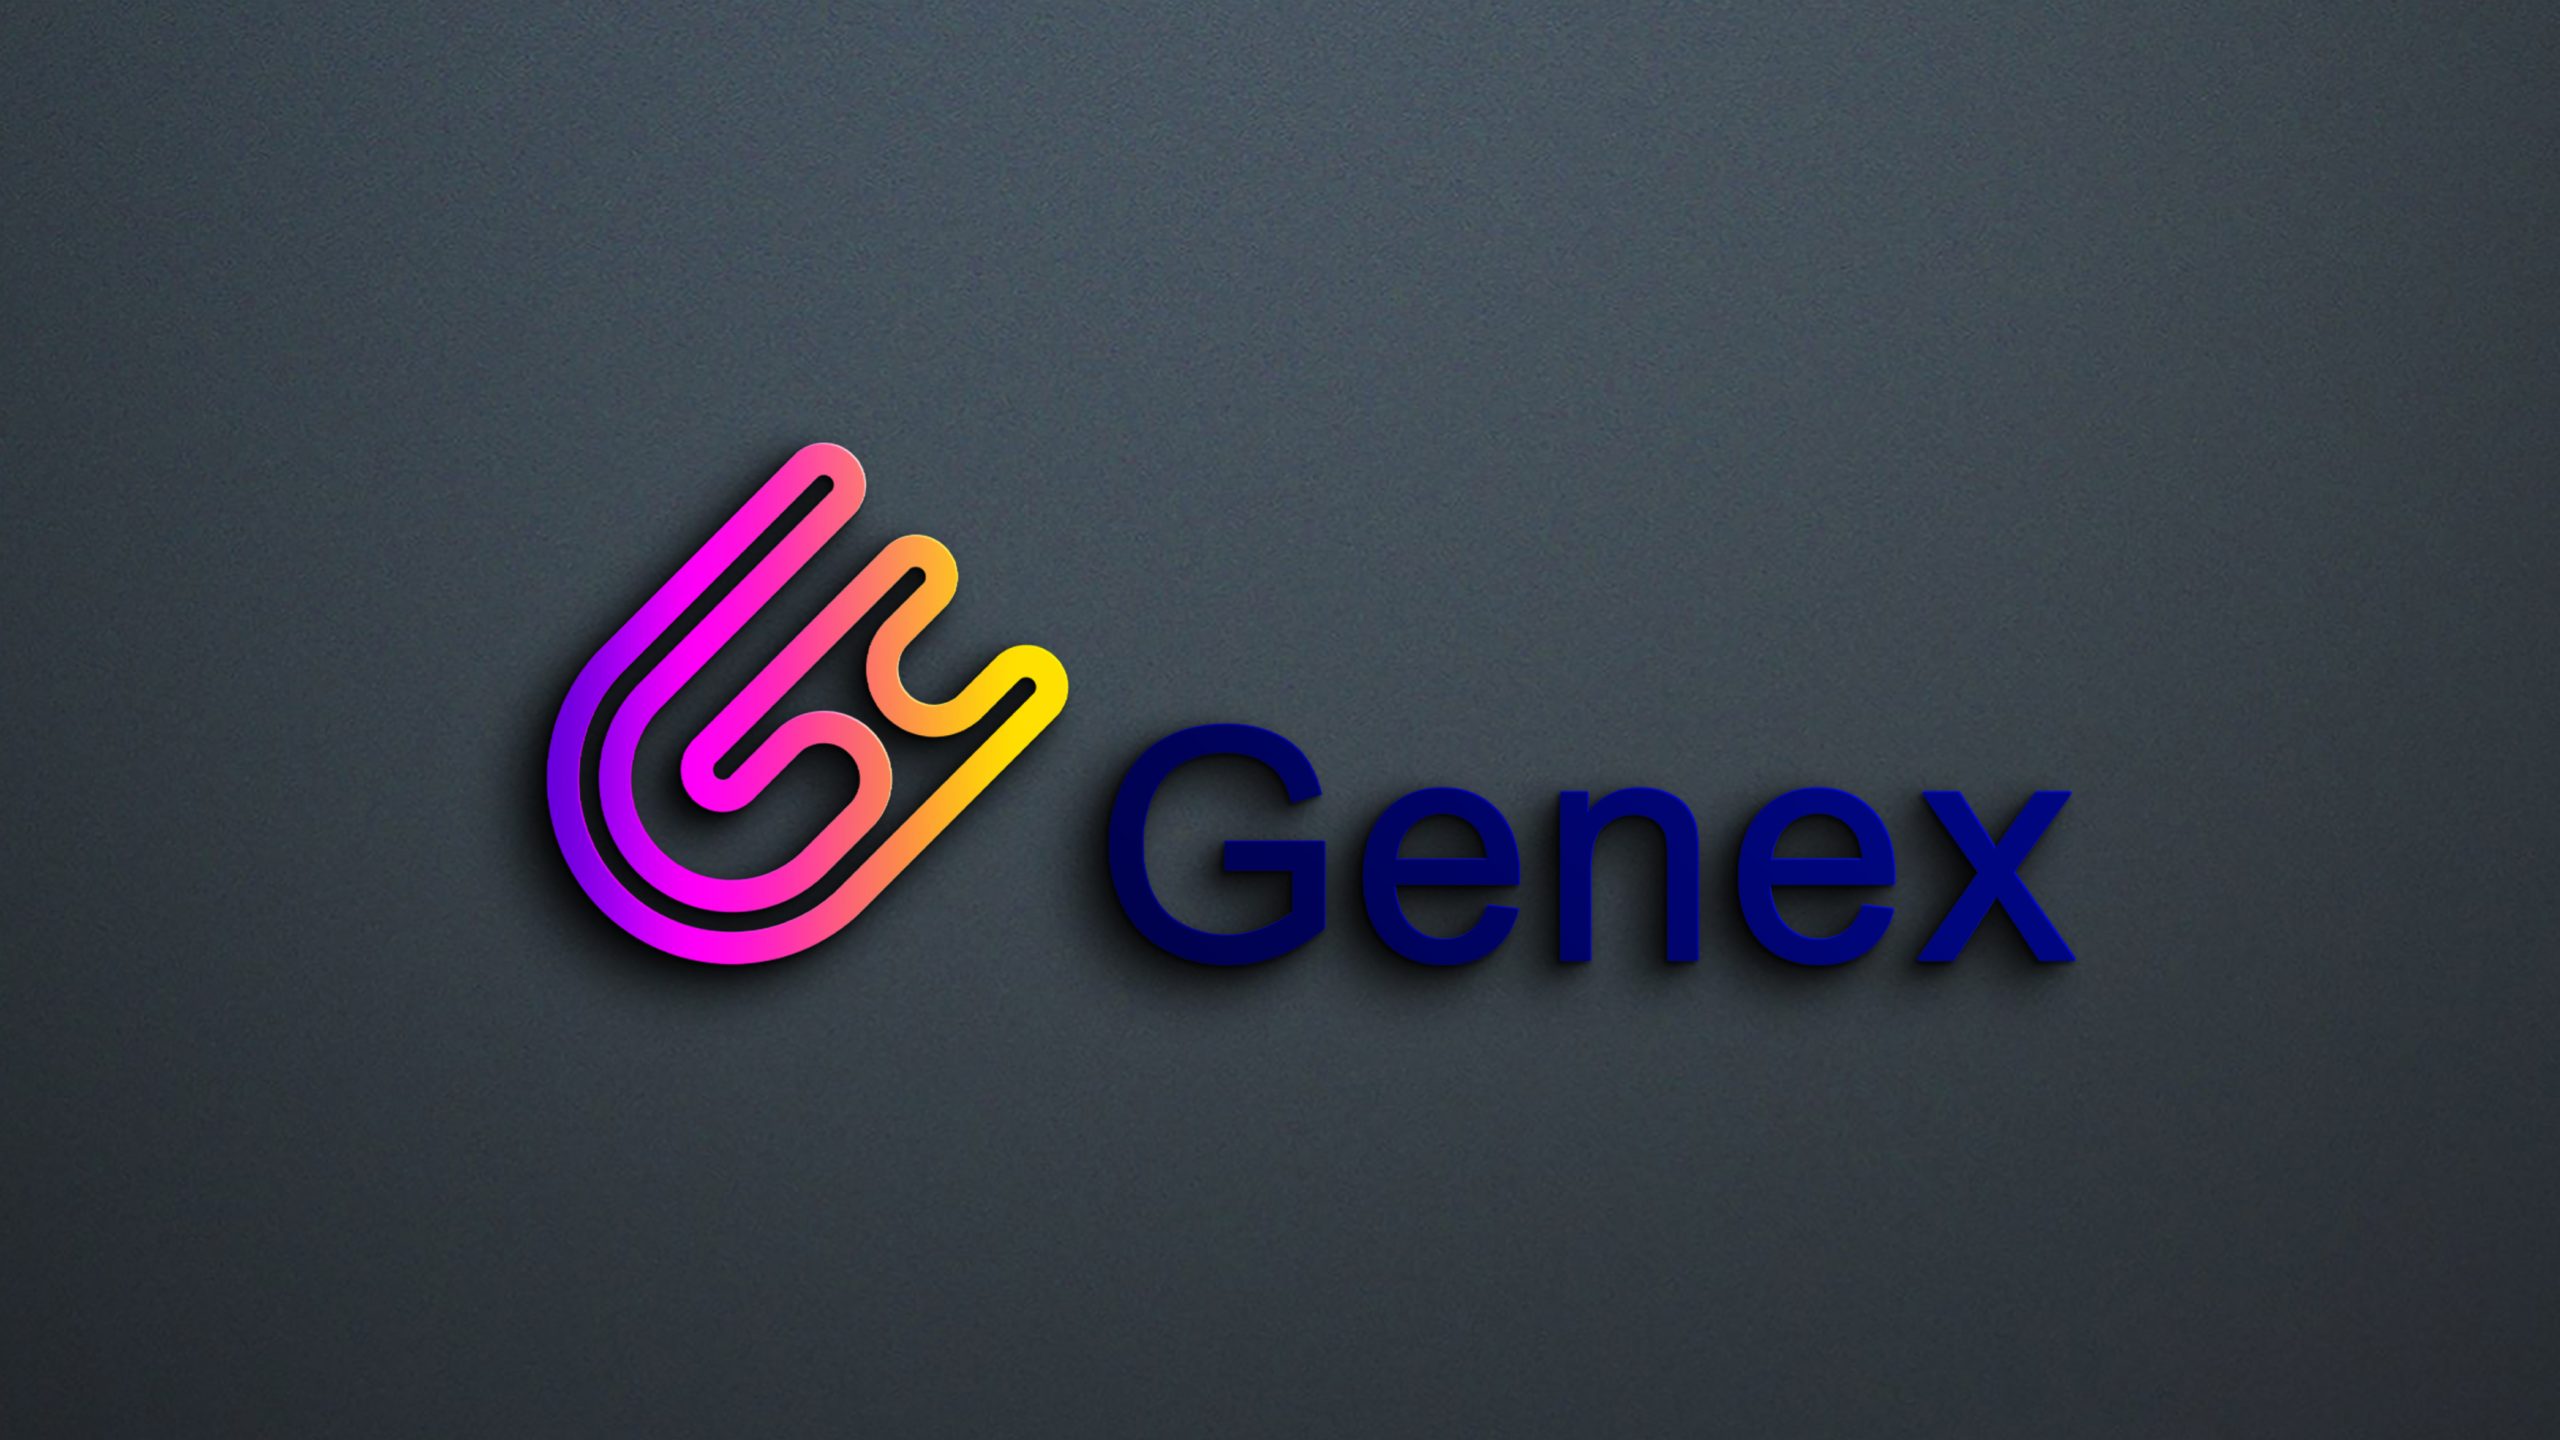 Genex Logo Design